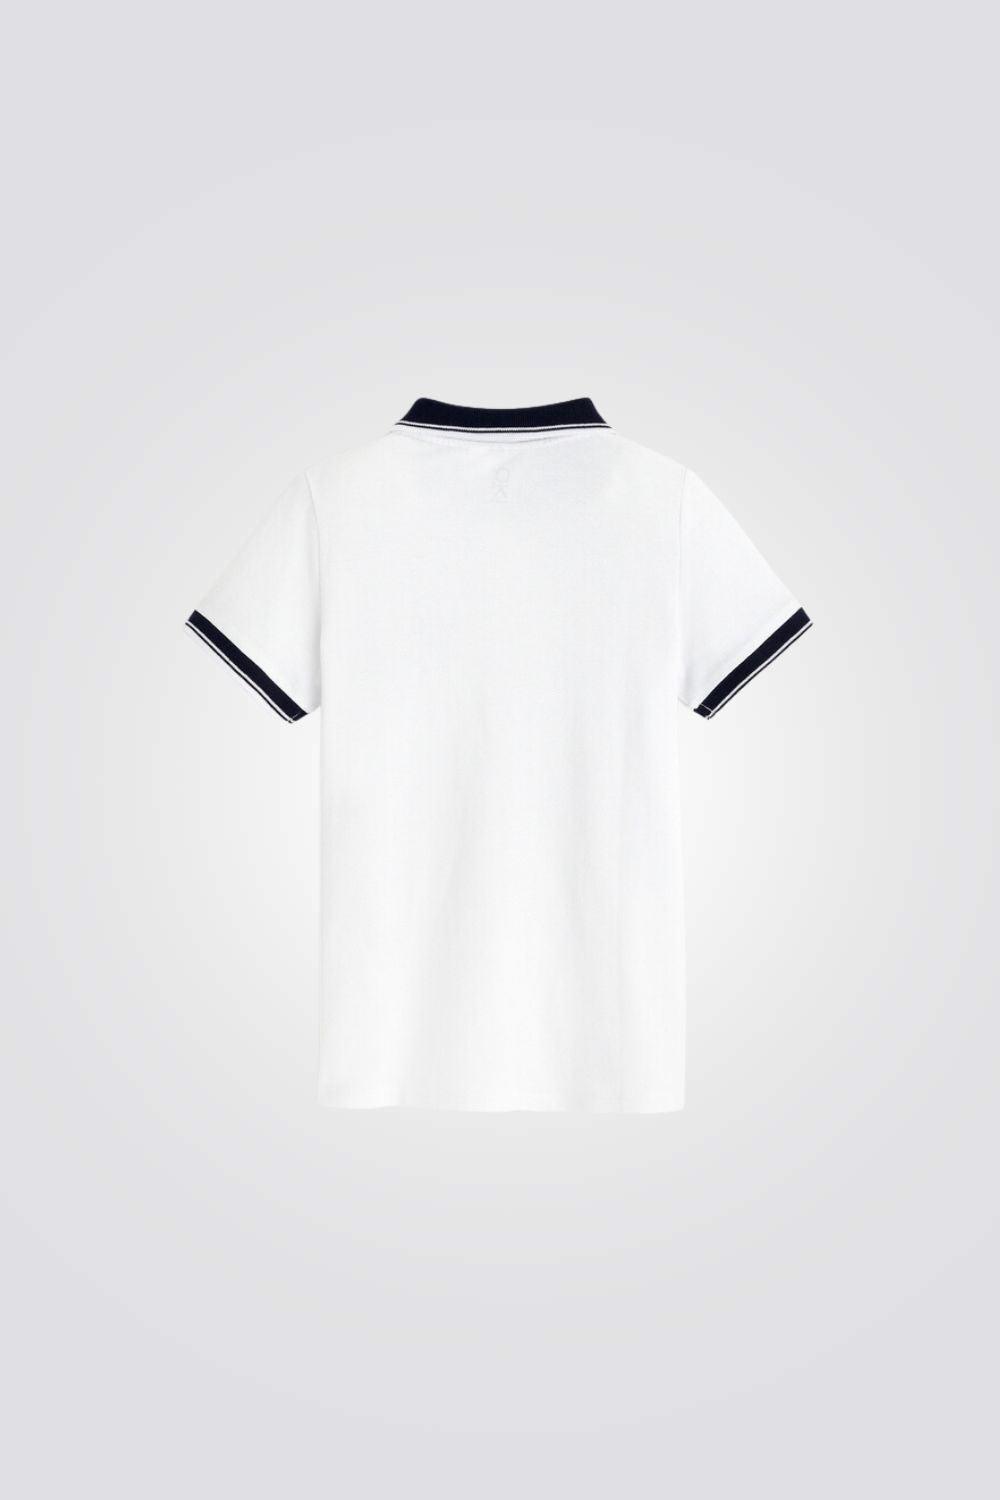 חולצת פולו קצרה לילדים בצבע לבן - MASHBIR//365